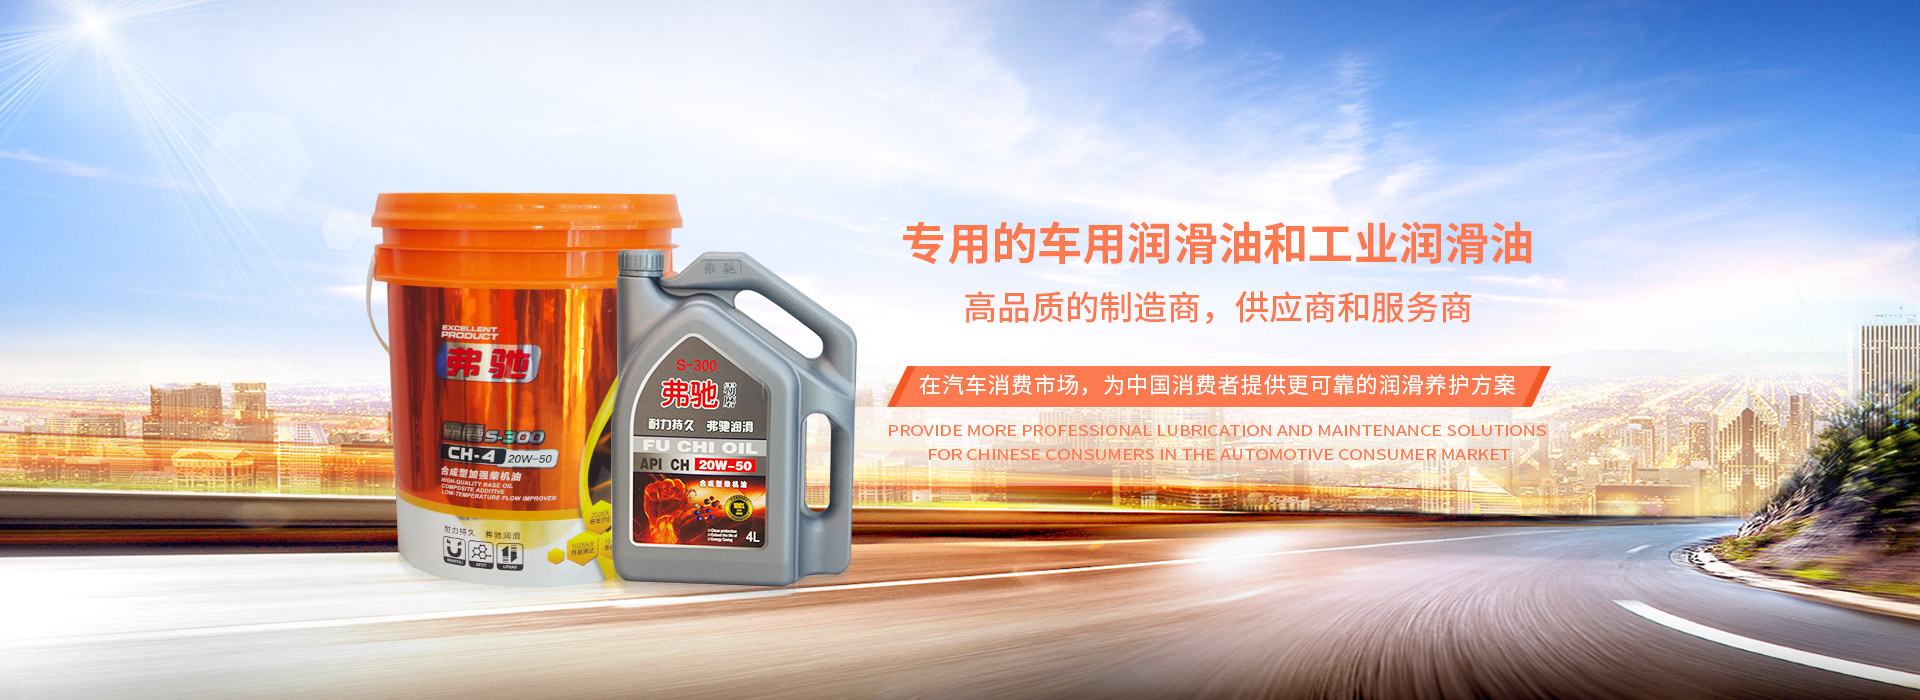 上海弗馳潤滑油有限公司